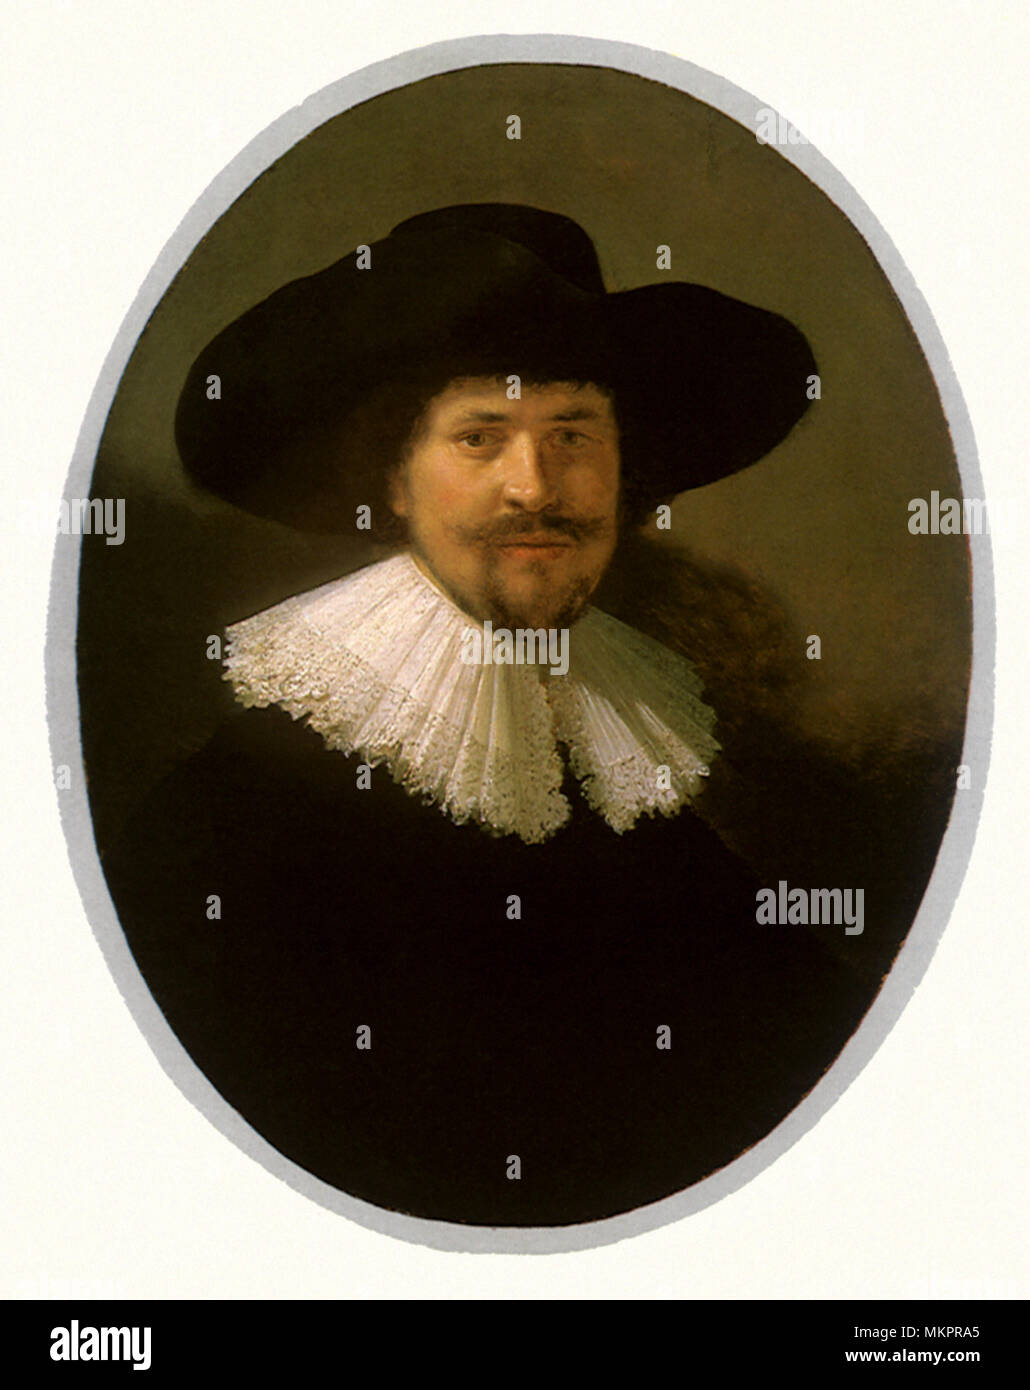 Porträt eines Mannes mit einem Spitzbart&a Wide-Brimmed Hat Stockfoto